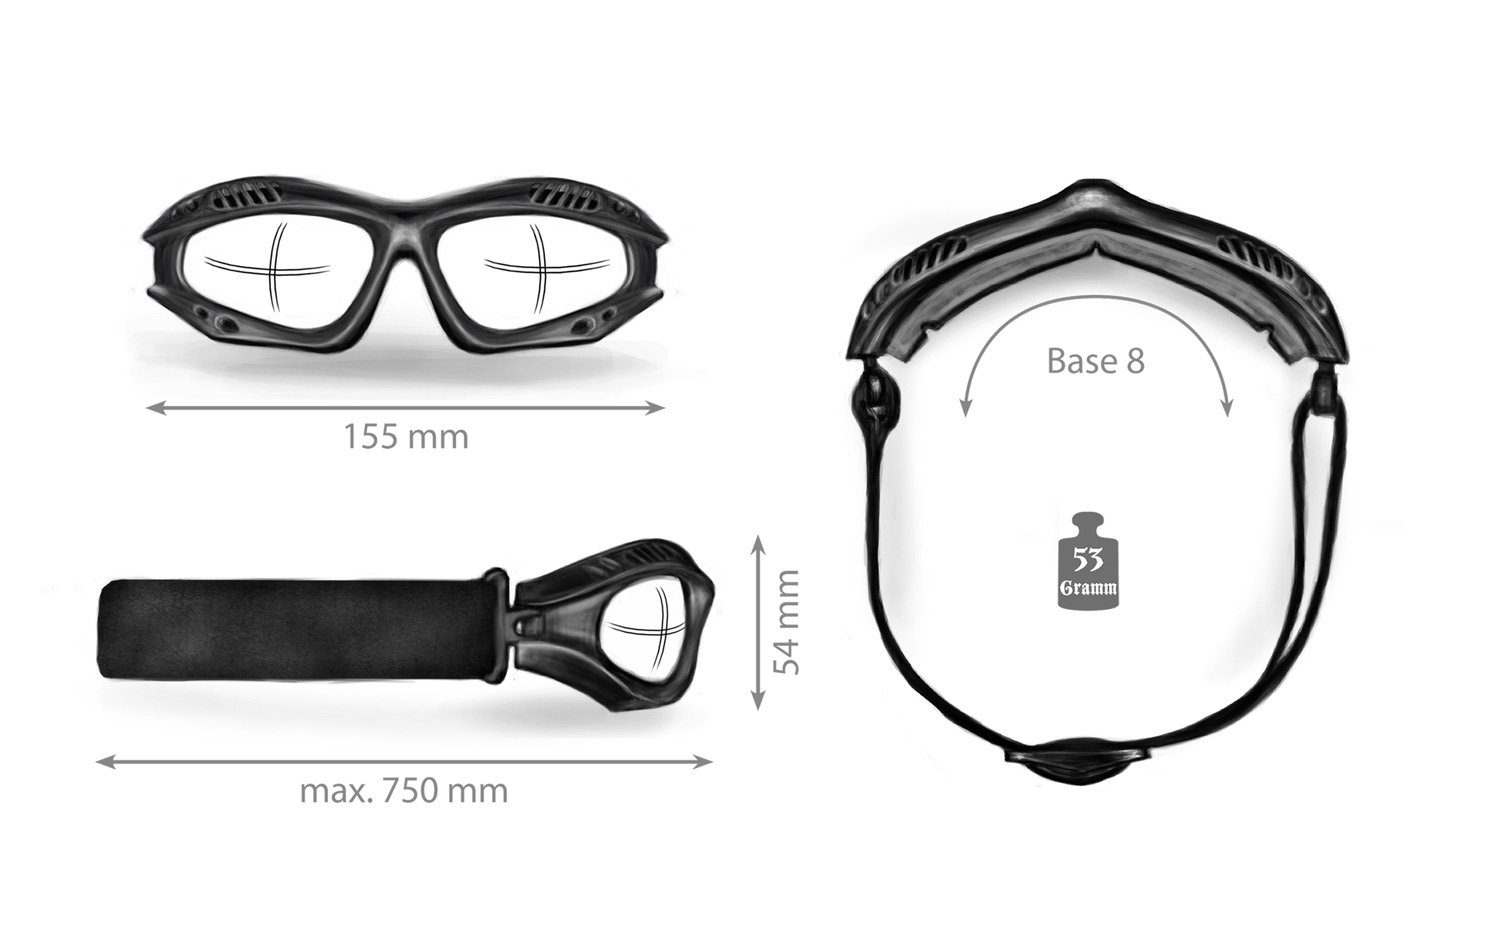 hellrider, - No.1 Motorradbrille schnell selbsttönende Bikereyes Helly Gläser